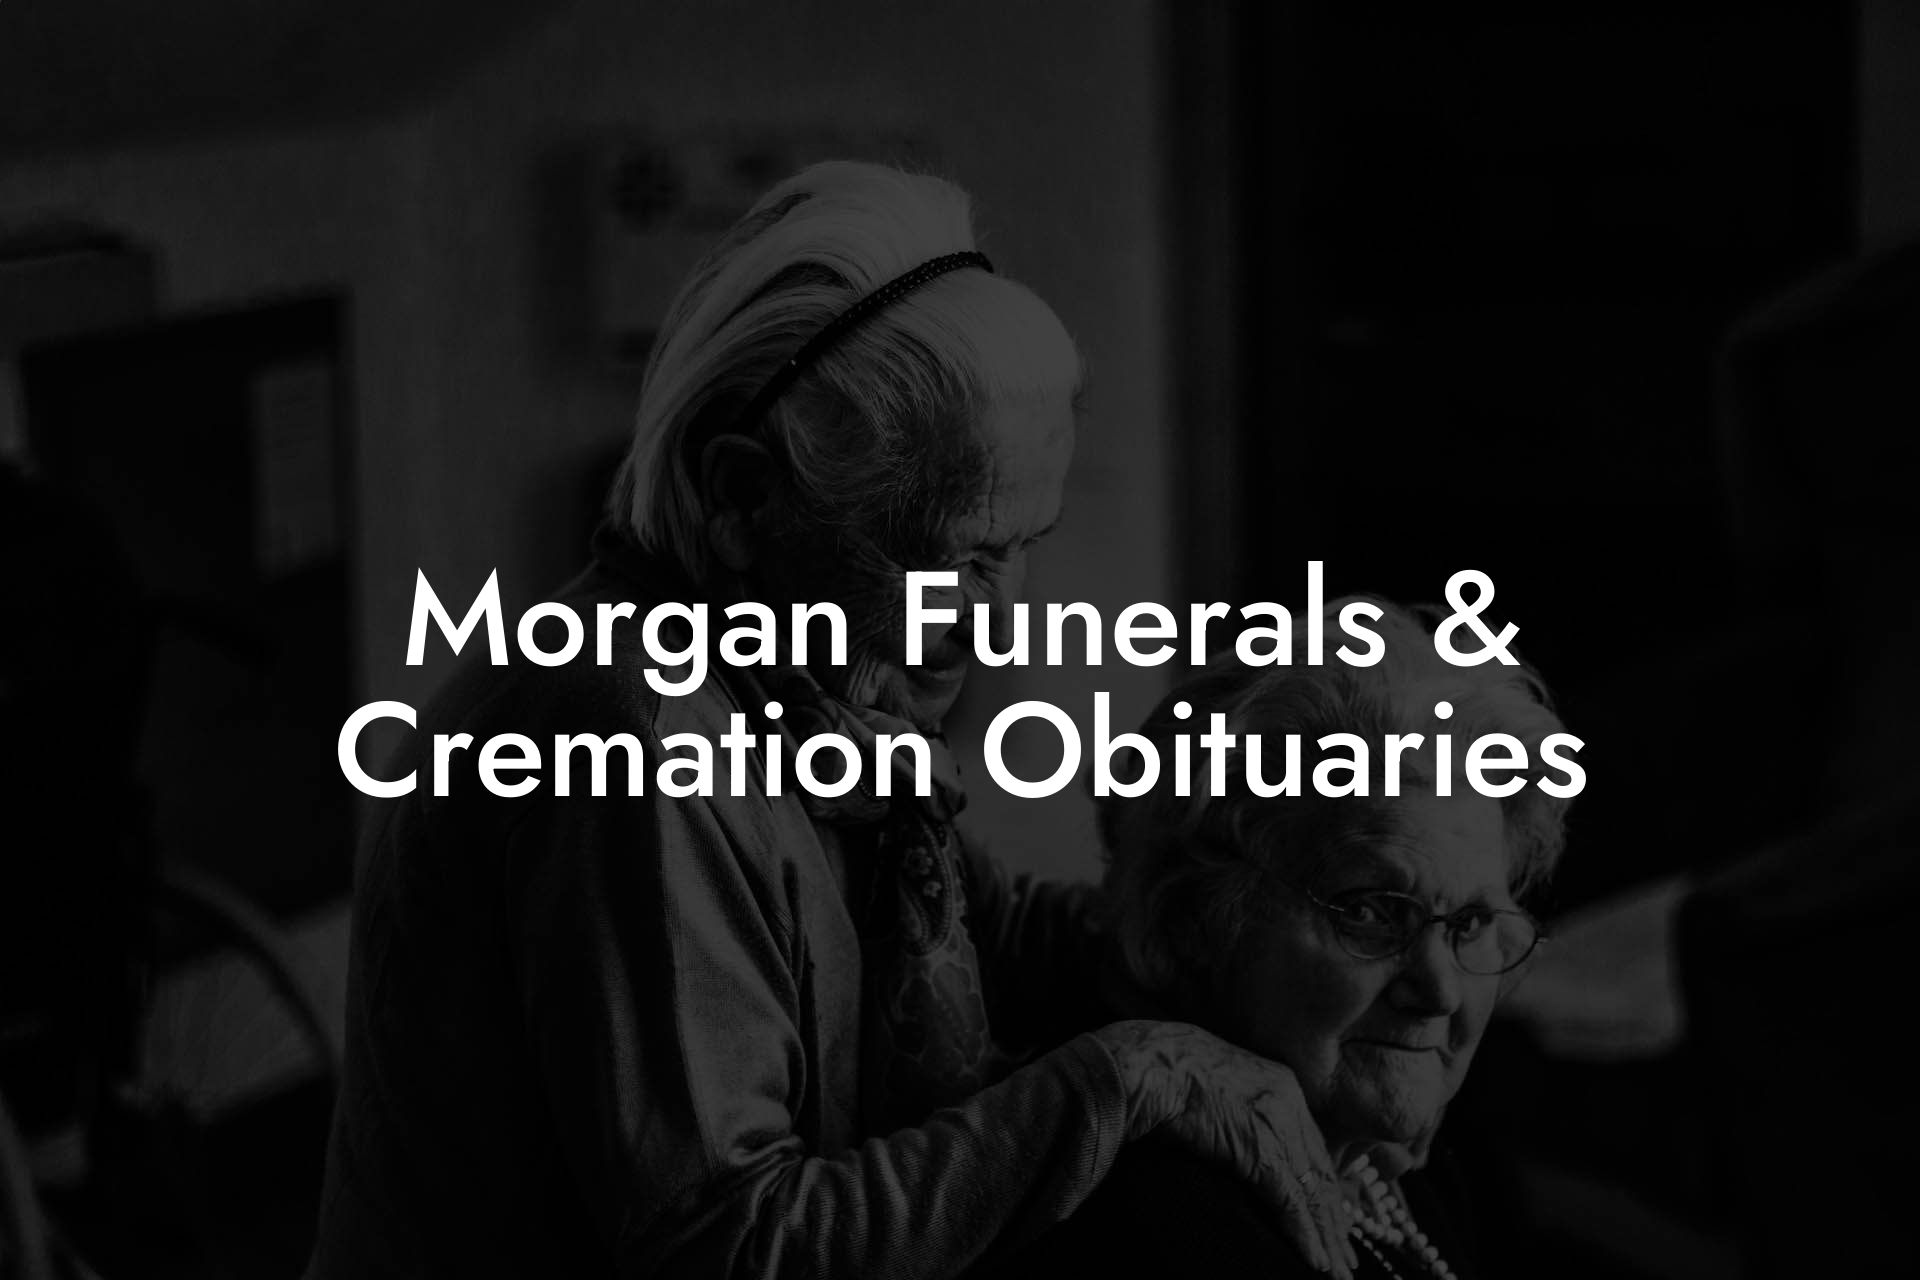 Morgan Funerals & Cremation Obituaries